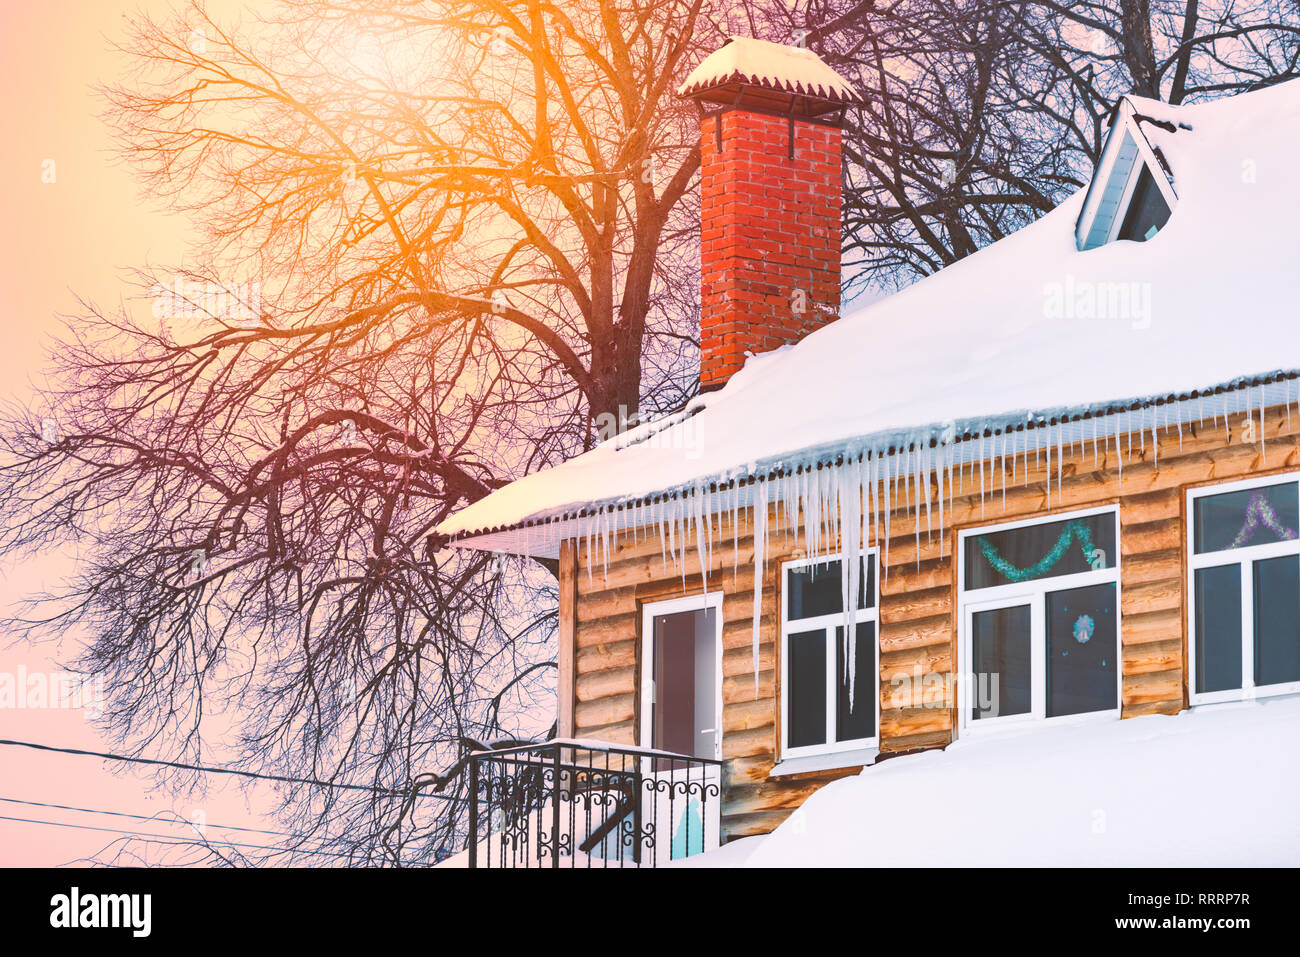 Maison en bois couverte de neige et de glaçons. L'hiver en Russie. Banque D'Images